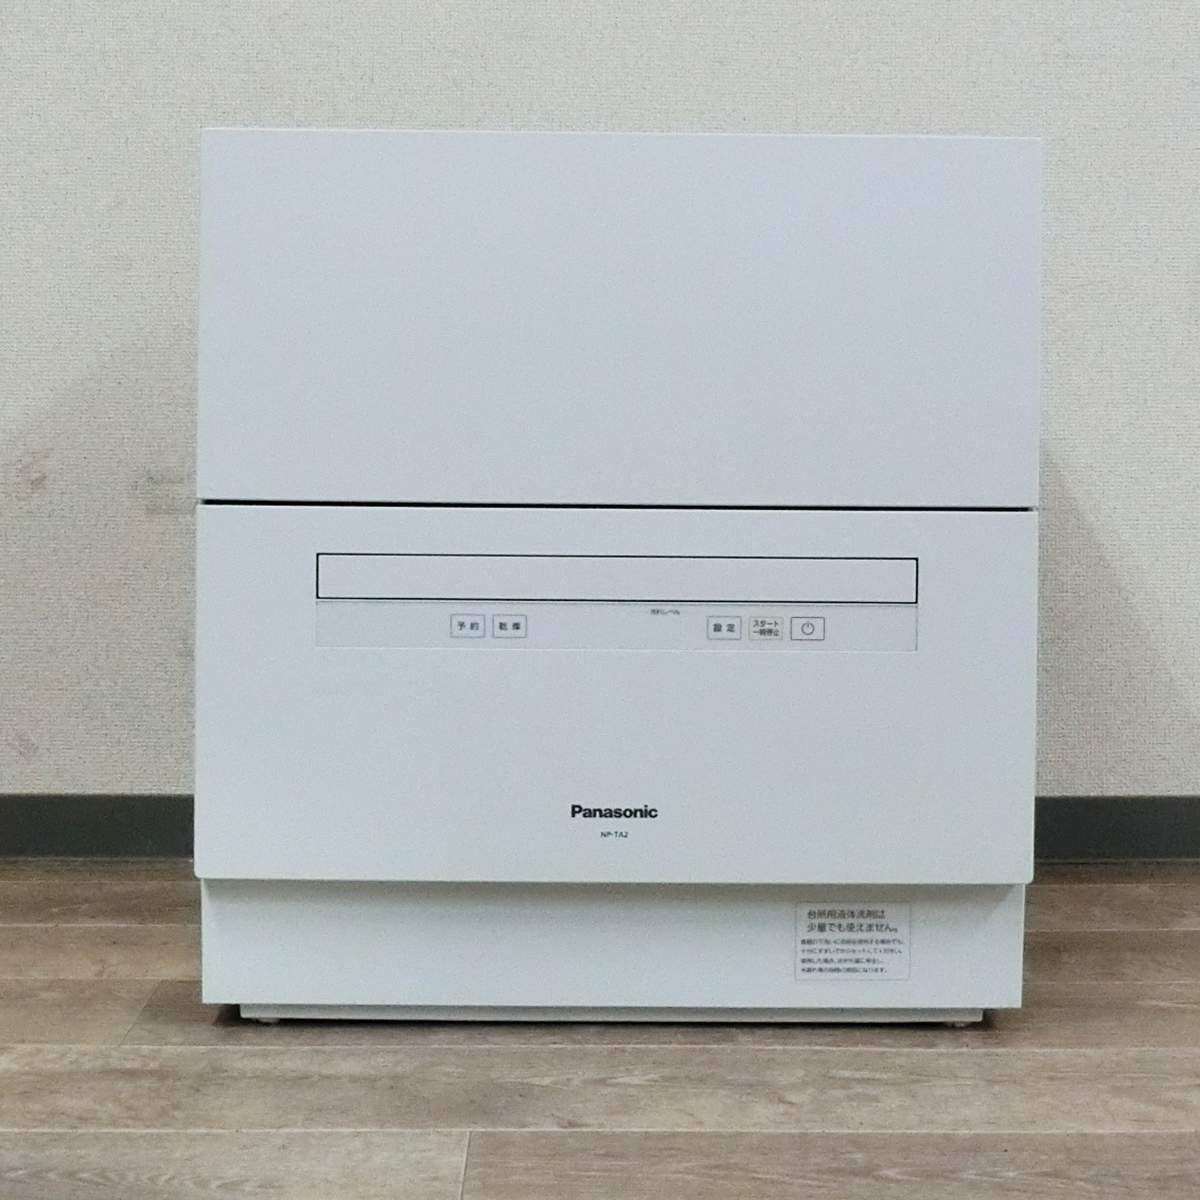 特価品蔵出し特集 Panasonic NP-TA2-W 食器洗い乾燥機 食洗機 2019年製 家電 パナソニック 菊NS